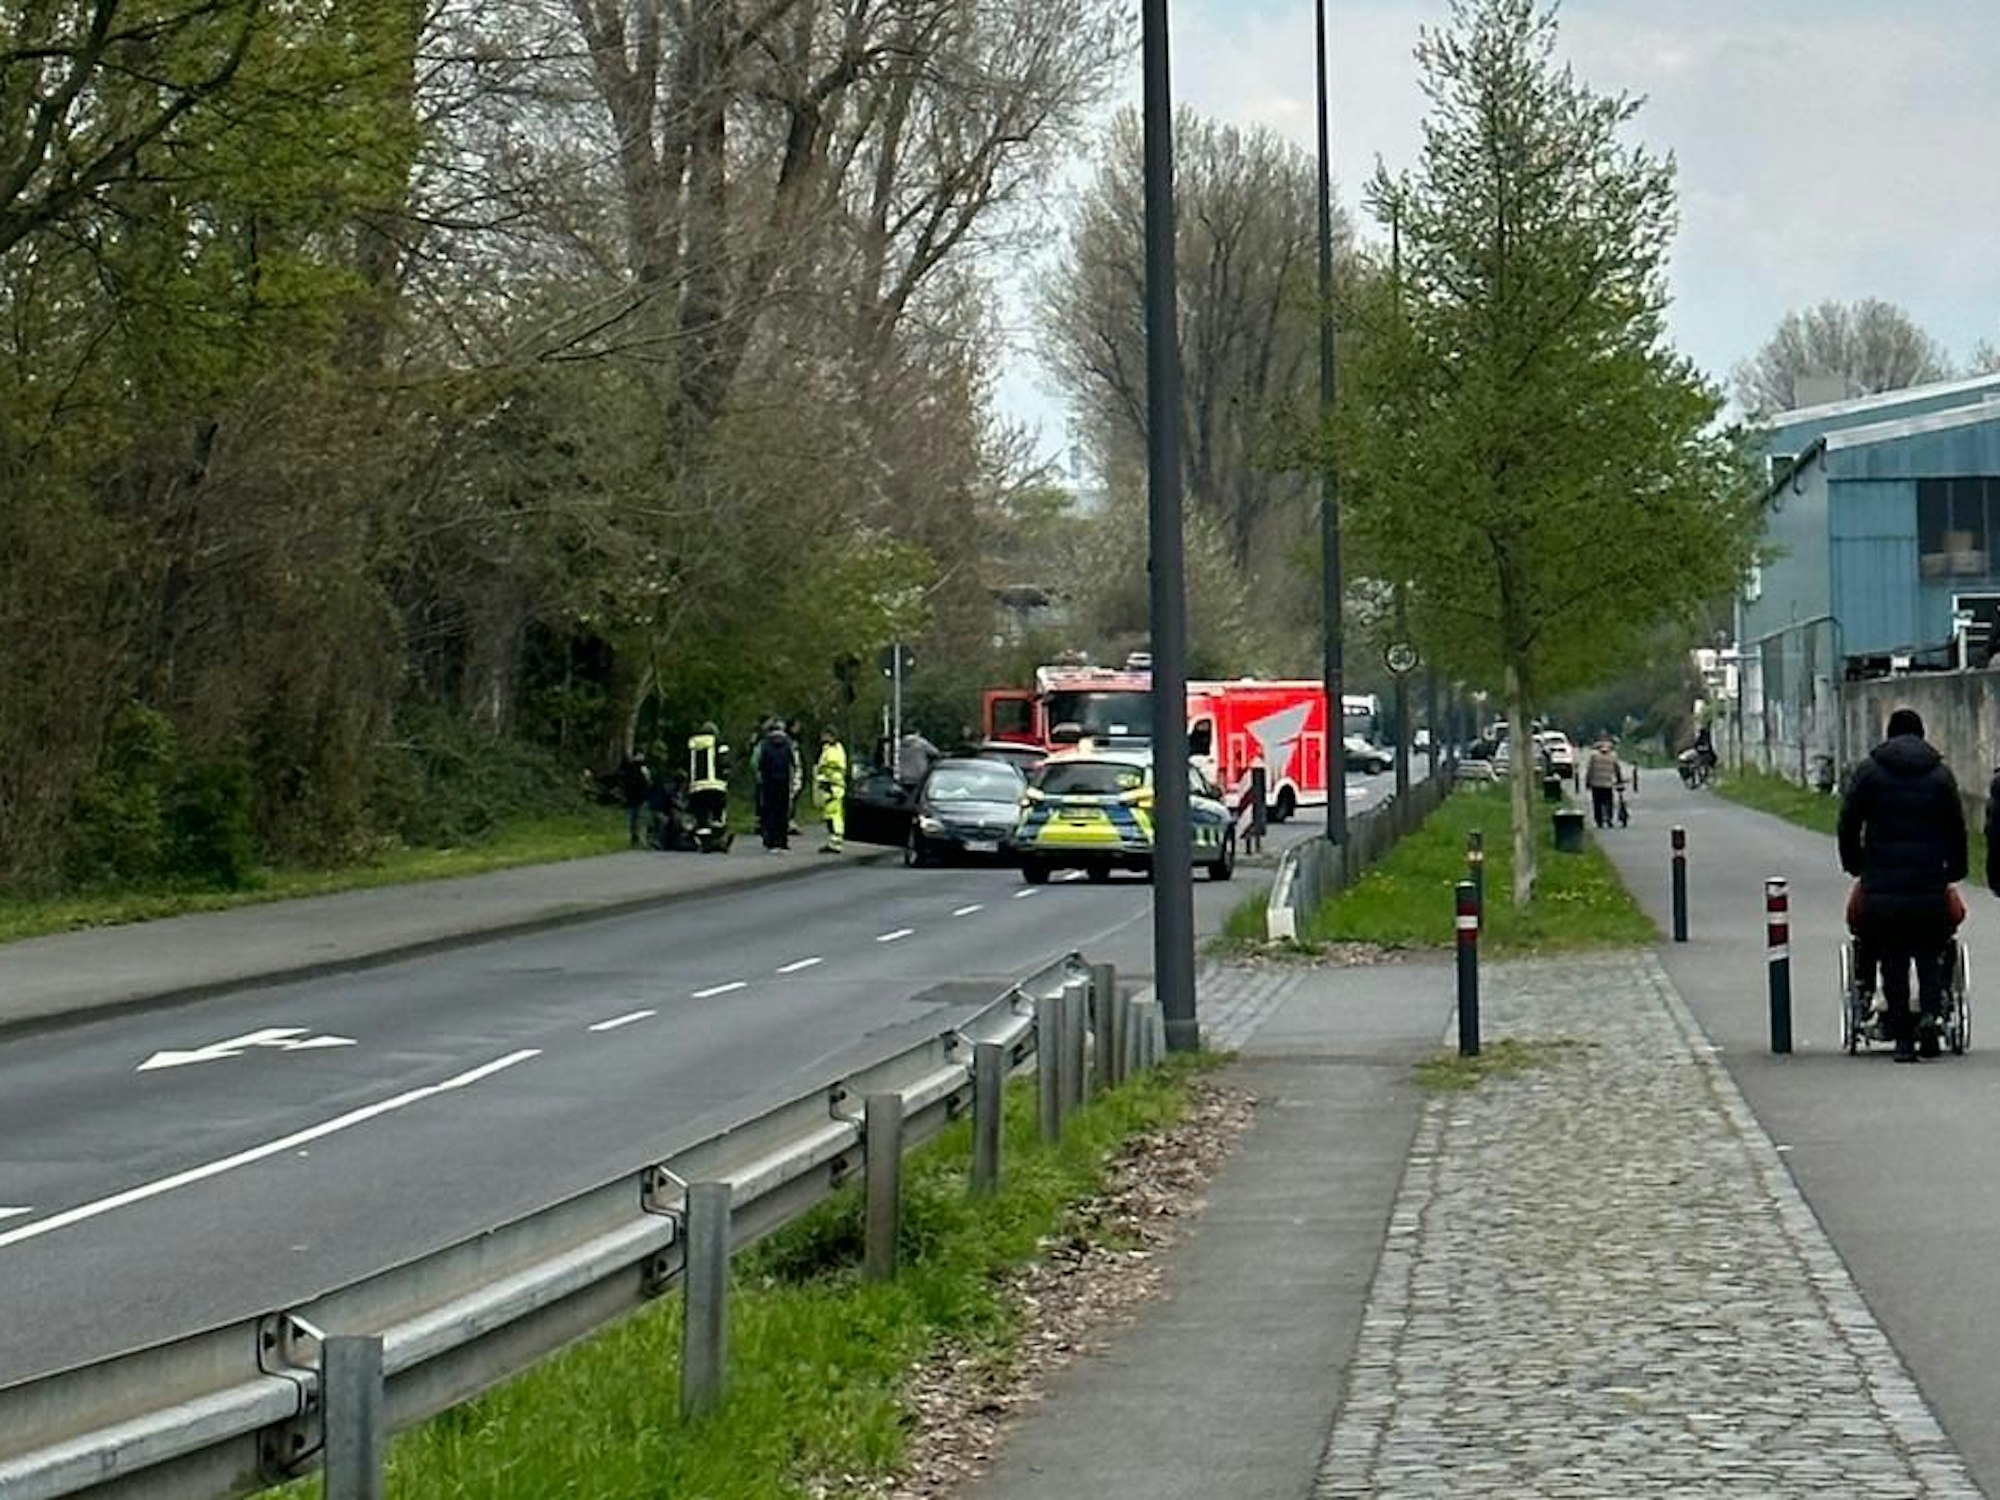 Polizei und Rettungswagen stehen neben einem Fahrzeug nach einem Unfall.